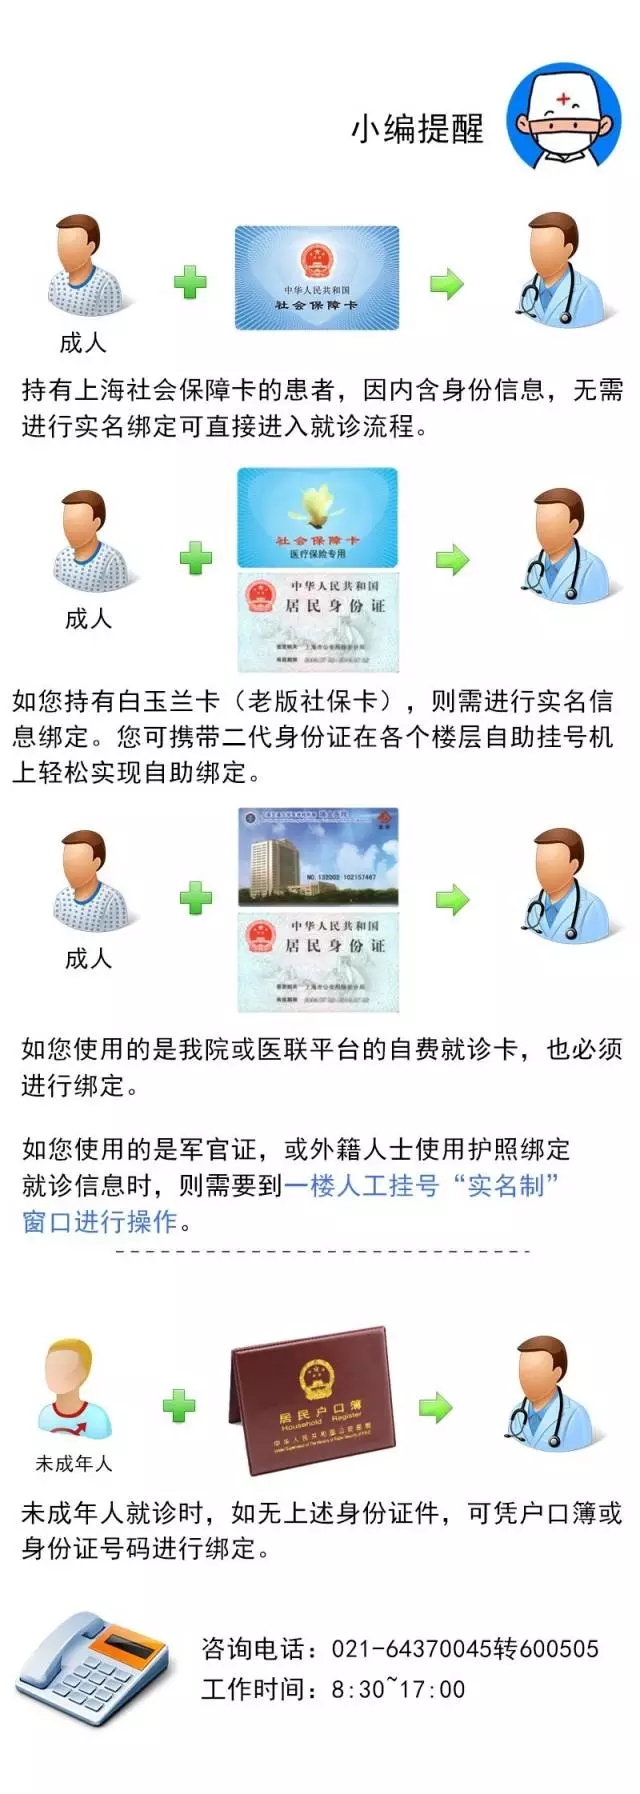 上海热线健康频道--一图让你读懂瑞金医院实名